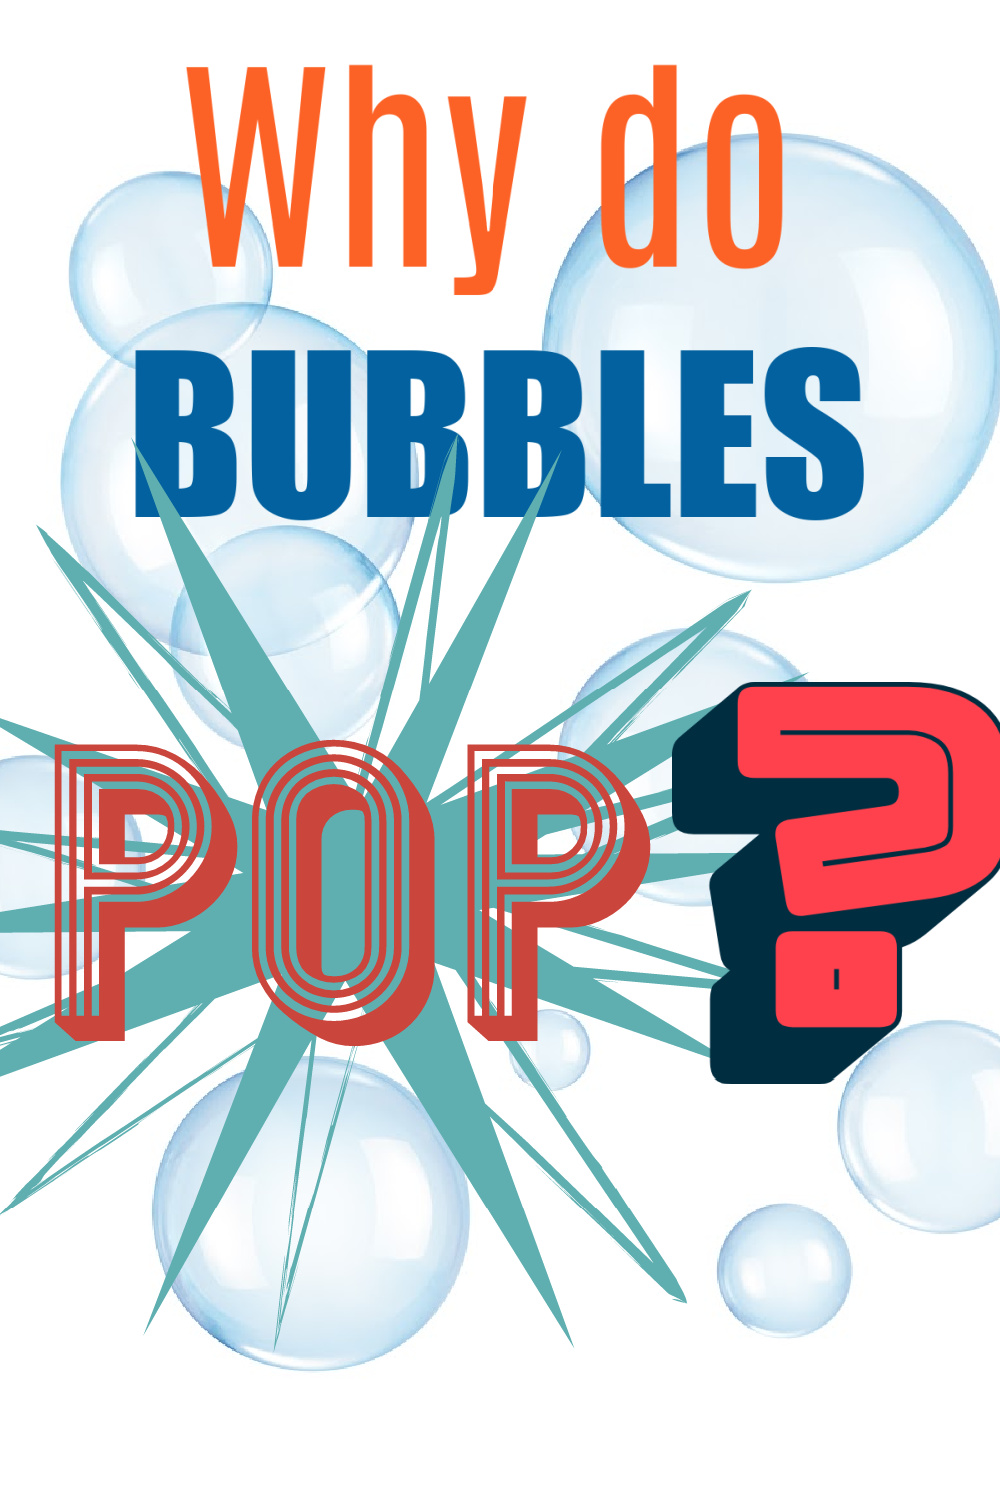 bubble pop aarp